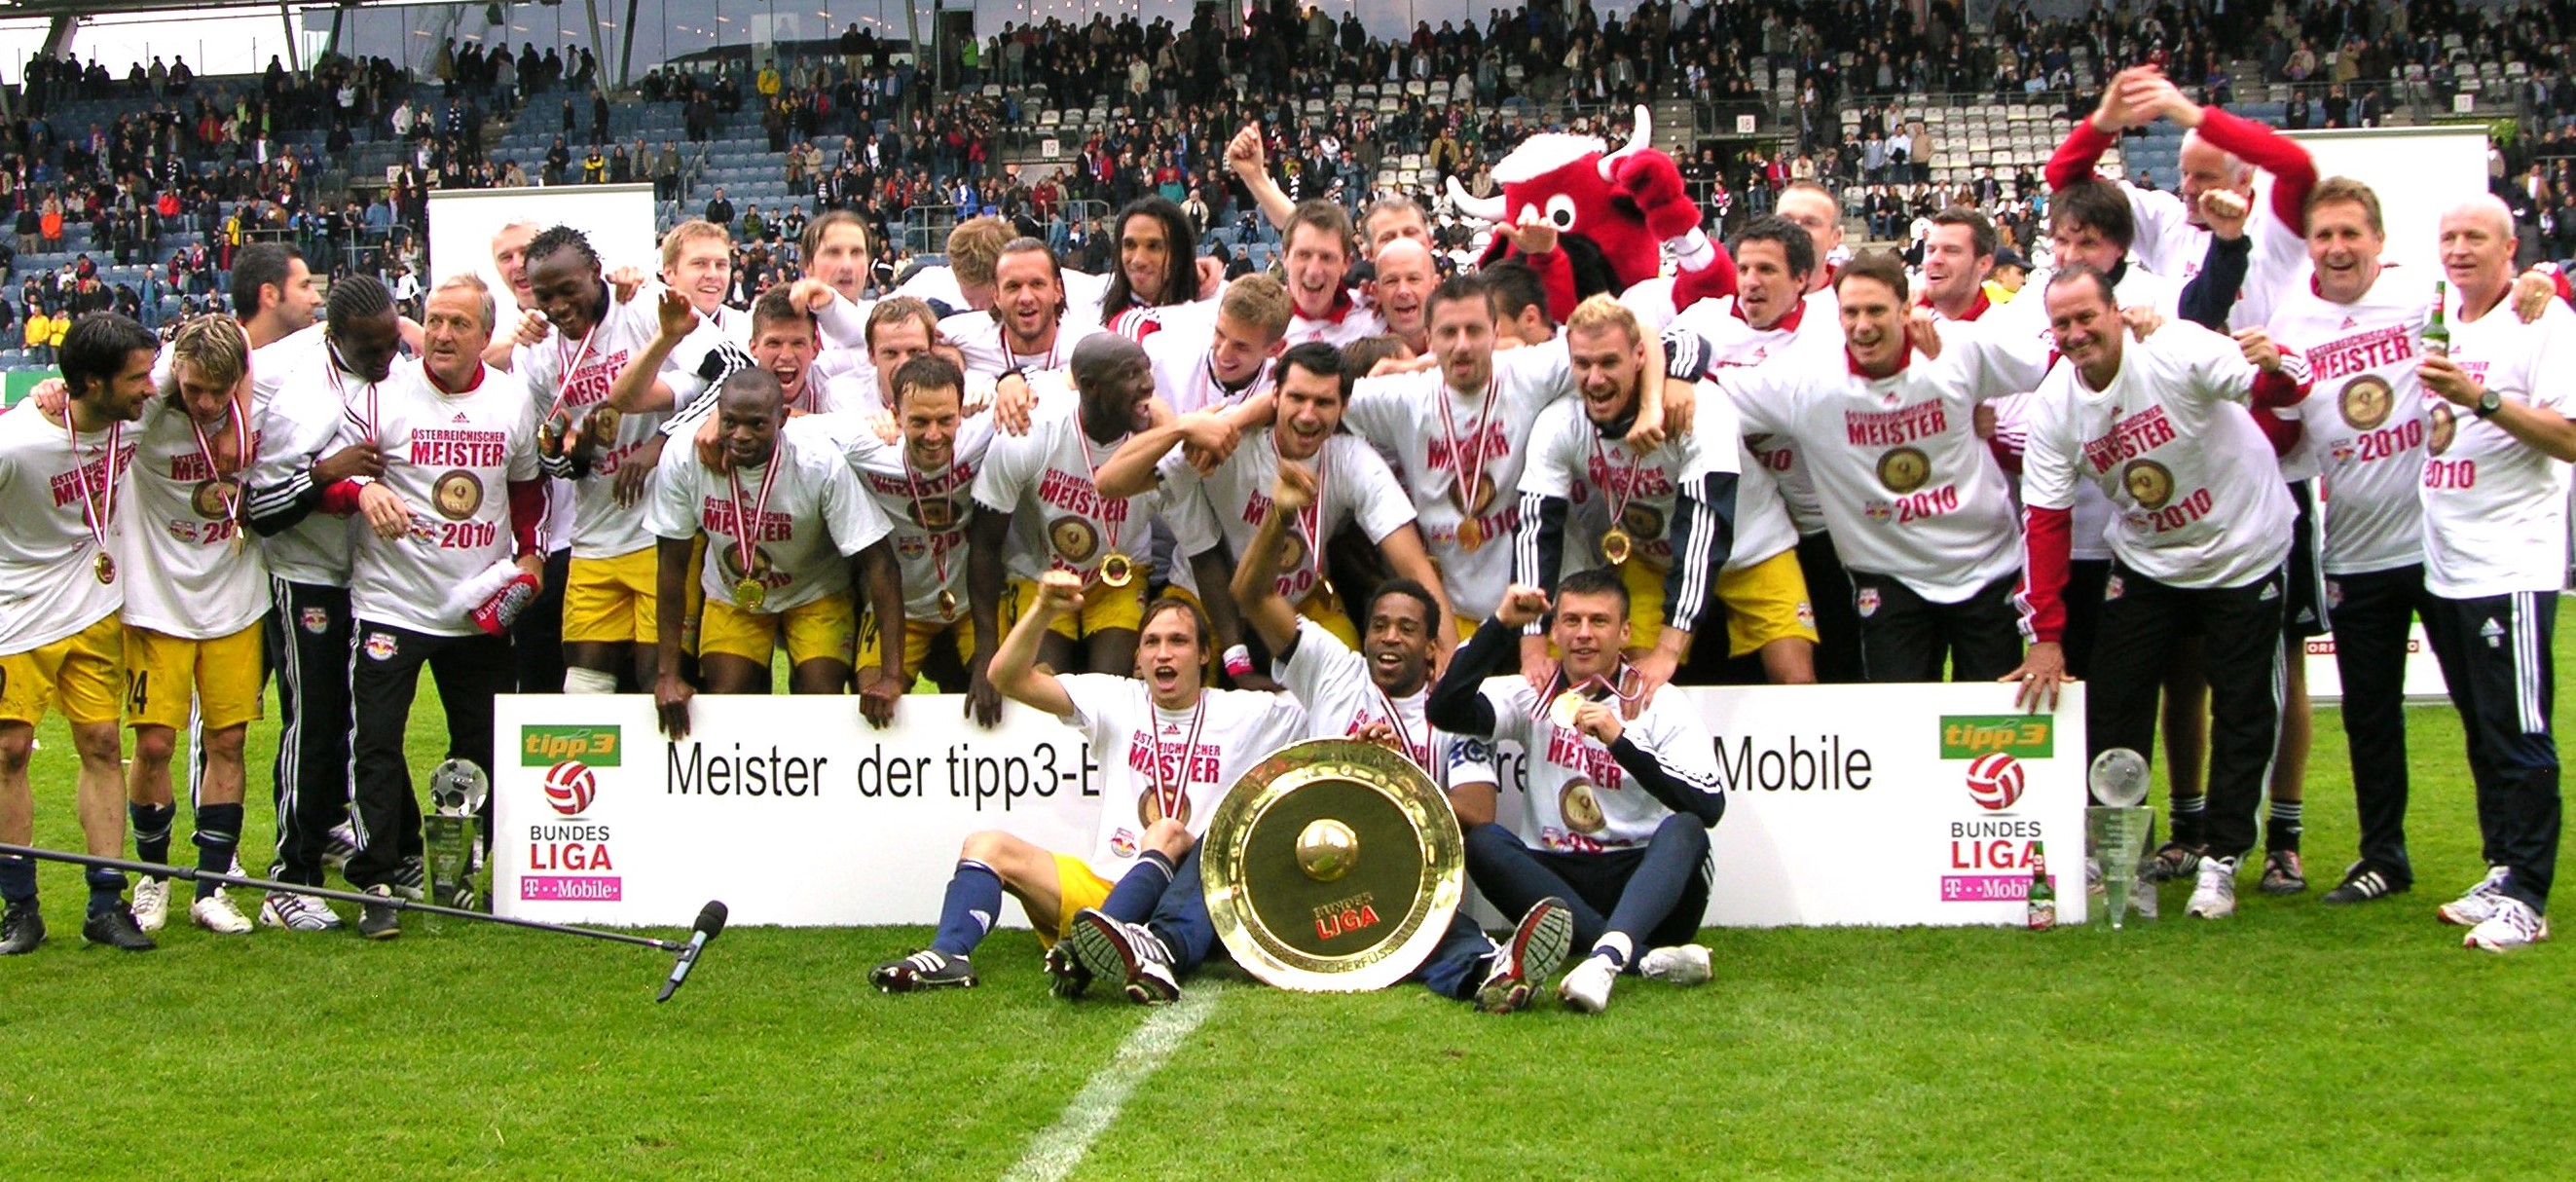 FC Red Bull Salzburg, winner of the 2009-10 Bundesliga